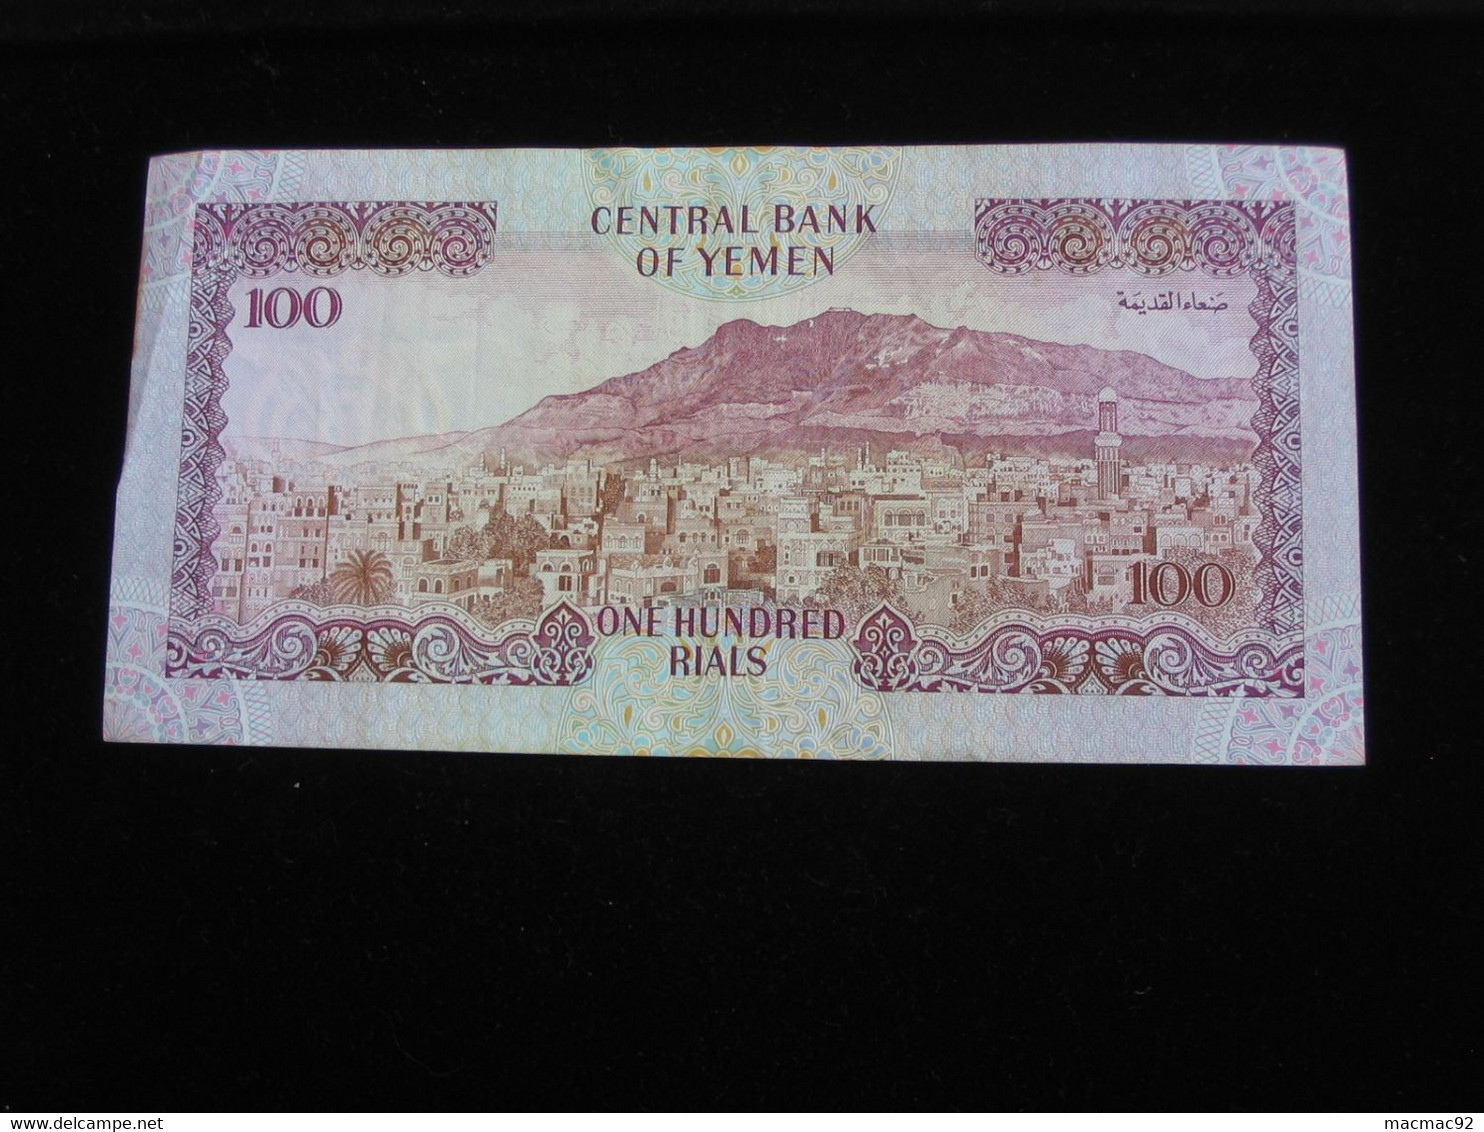 YEMEN  - 100 Five Hundred Rials 1997 - Central Bank Of Yemen   **** EN ACHAT IMMEDIAT ***** - Yémen